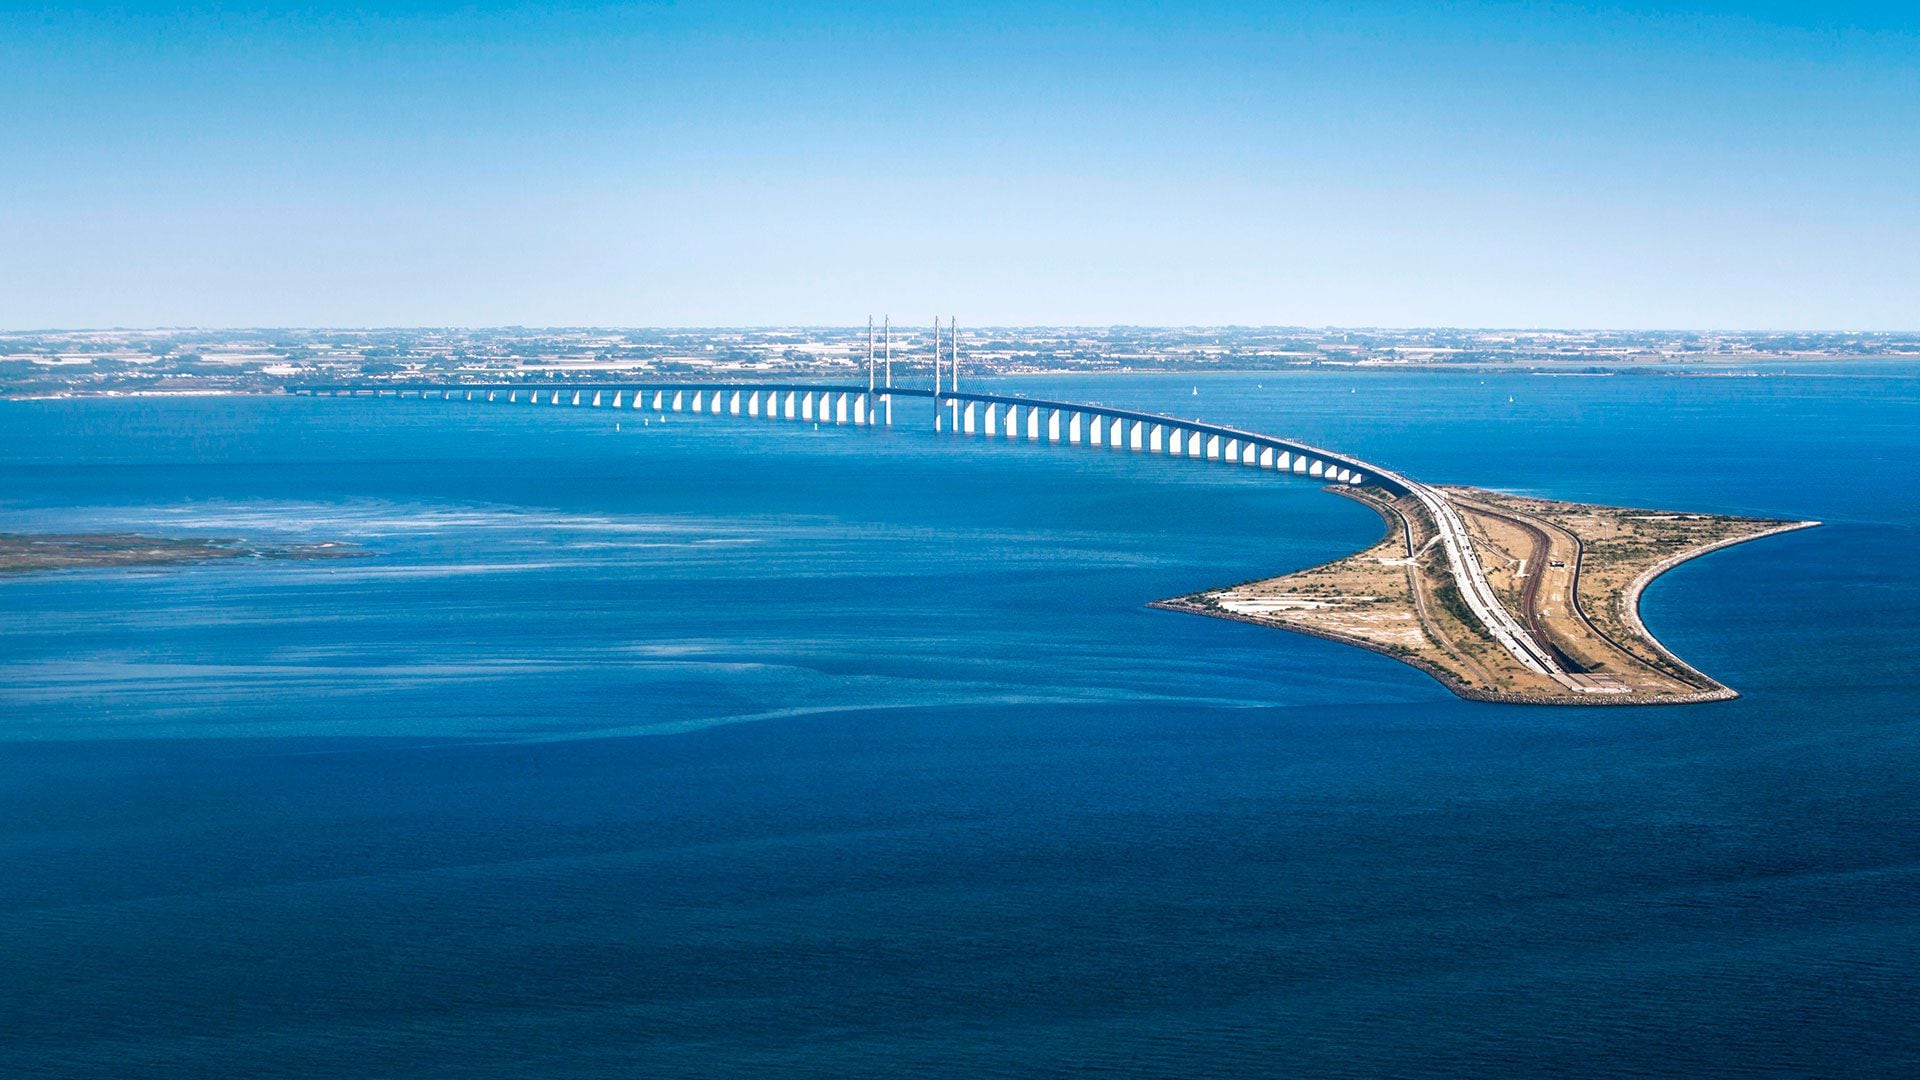 El impactante puente – túnel que pasa por debajo del mar y conecta a dos países europeos